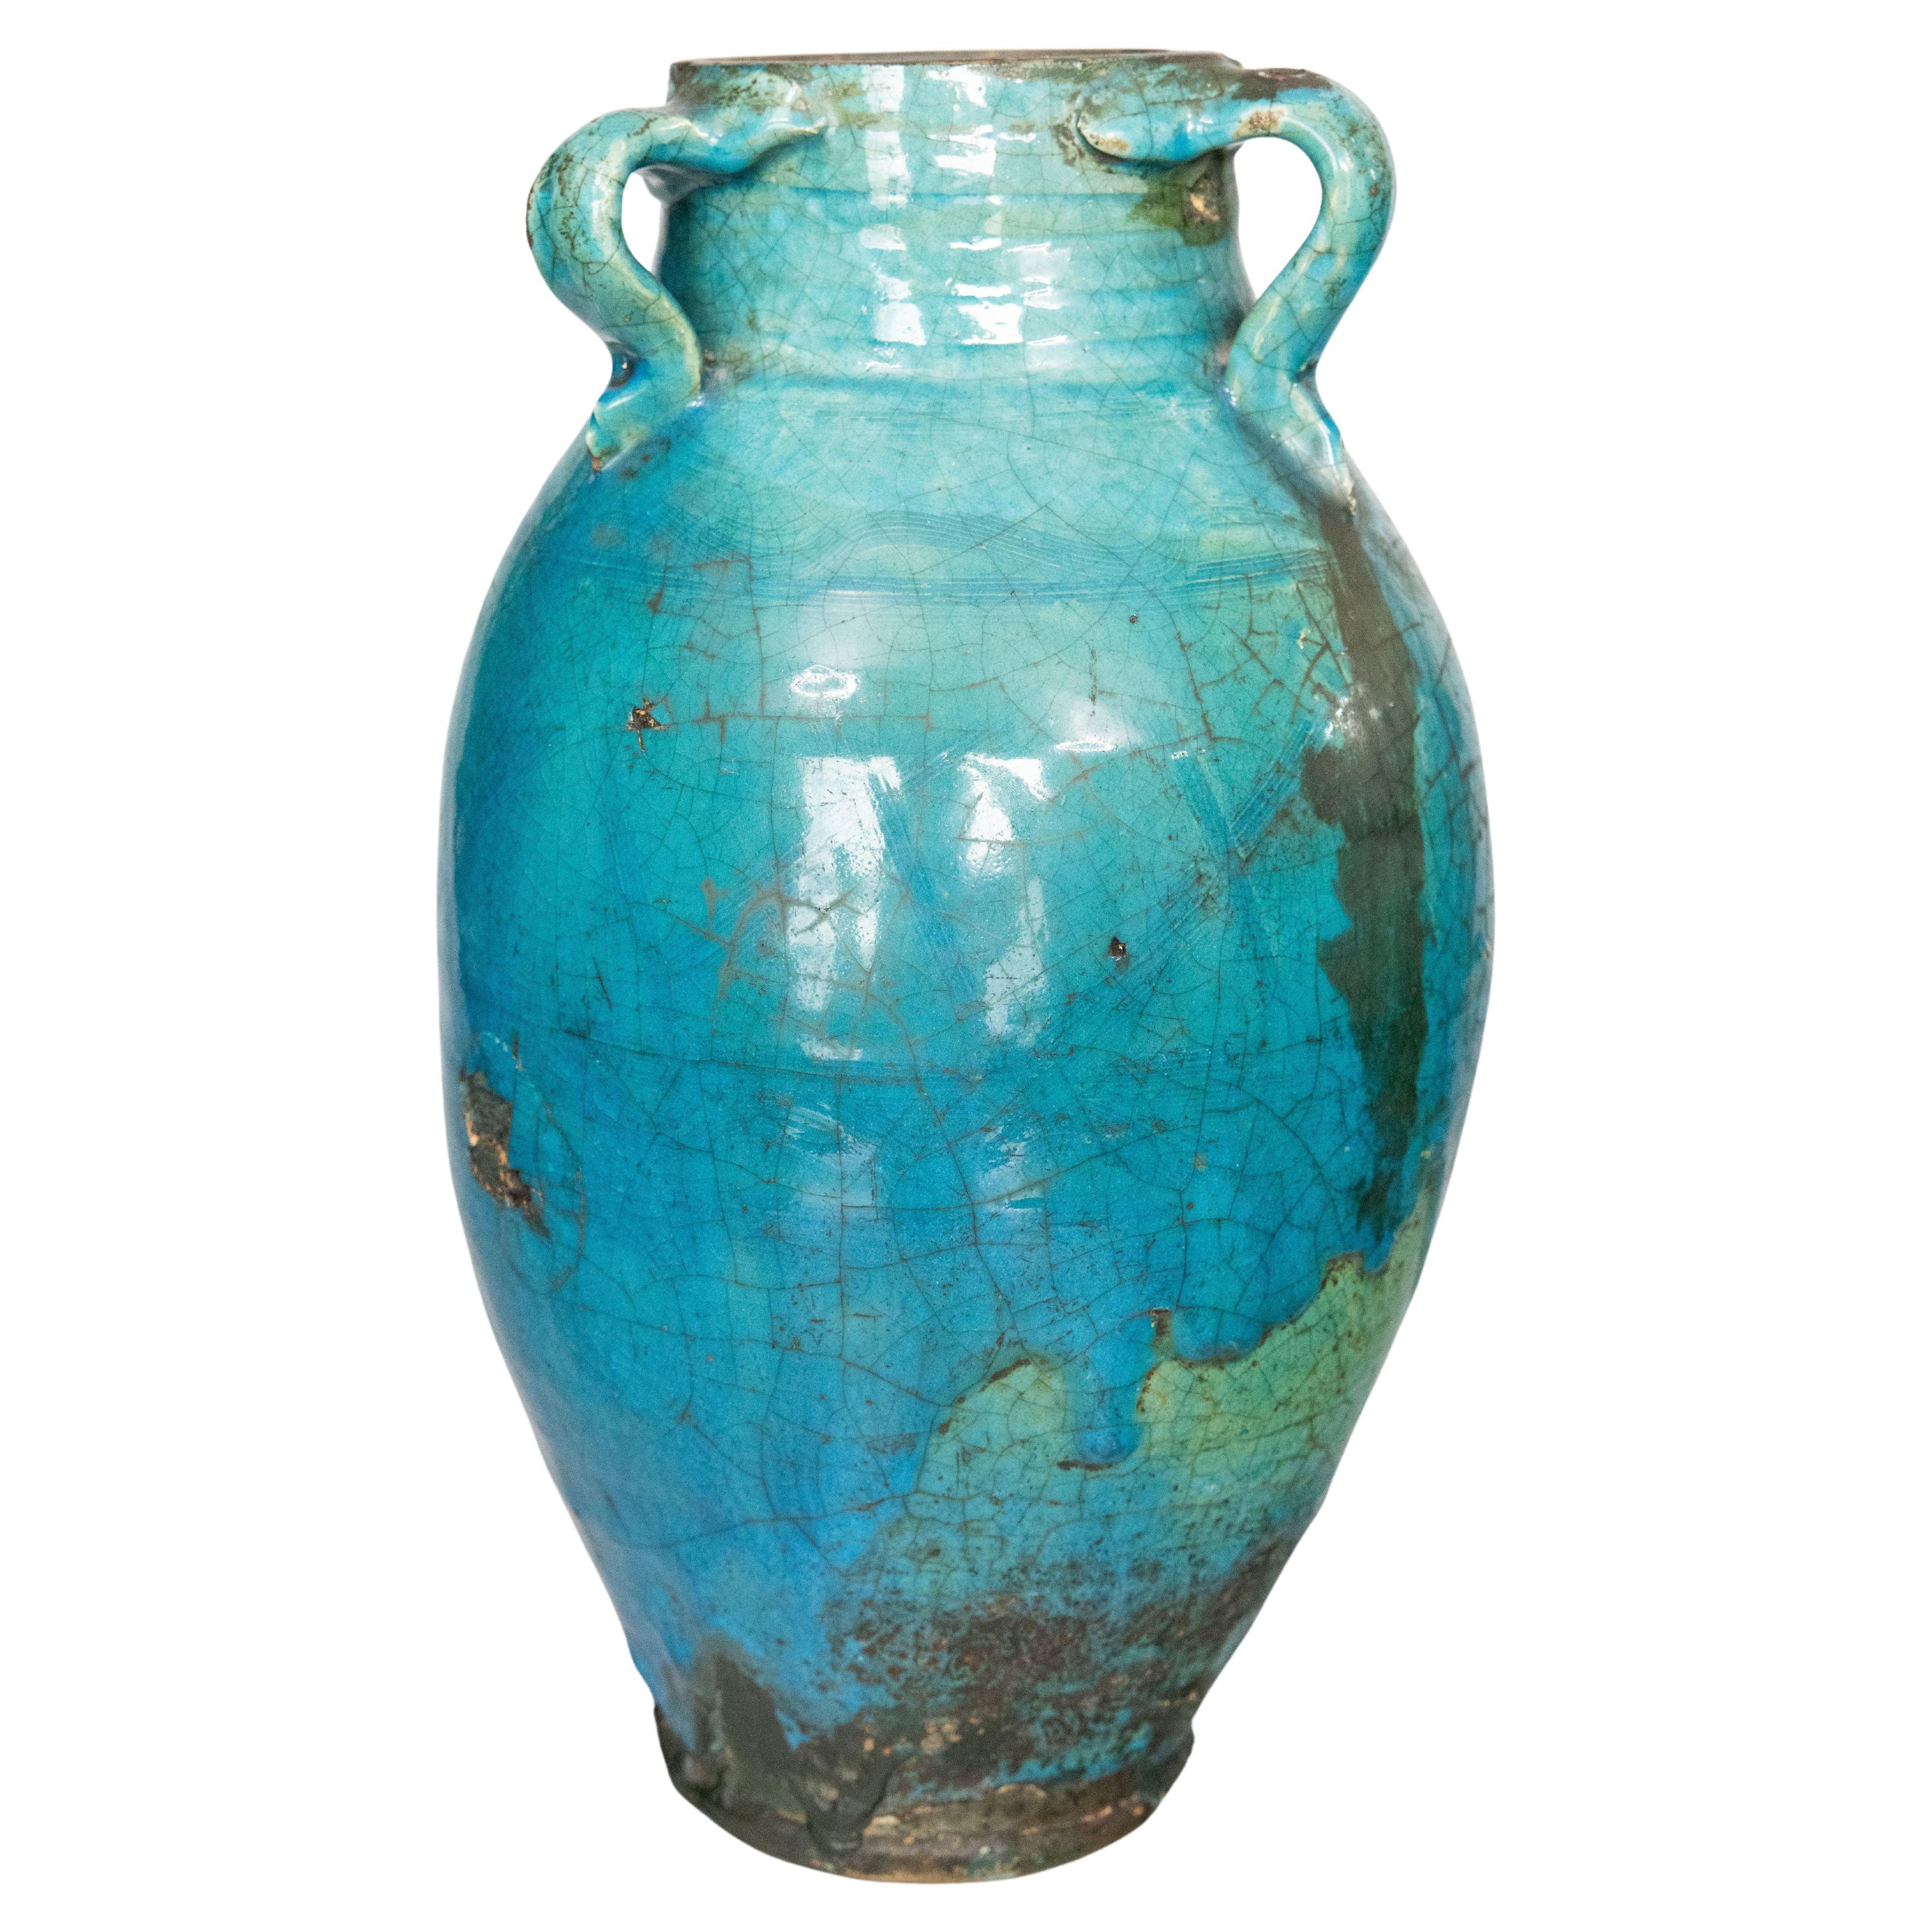 Large 19th Century French Turquoise Glazed Terracotta Vase Urn Olive Jar